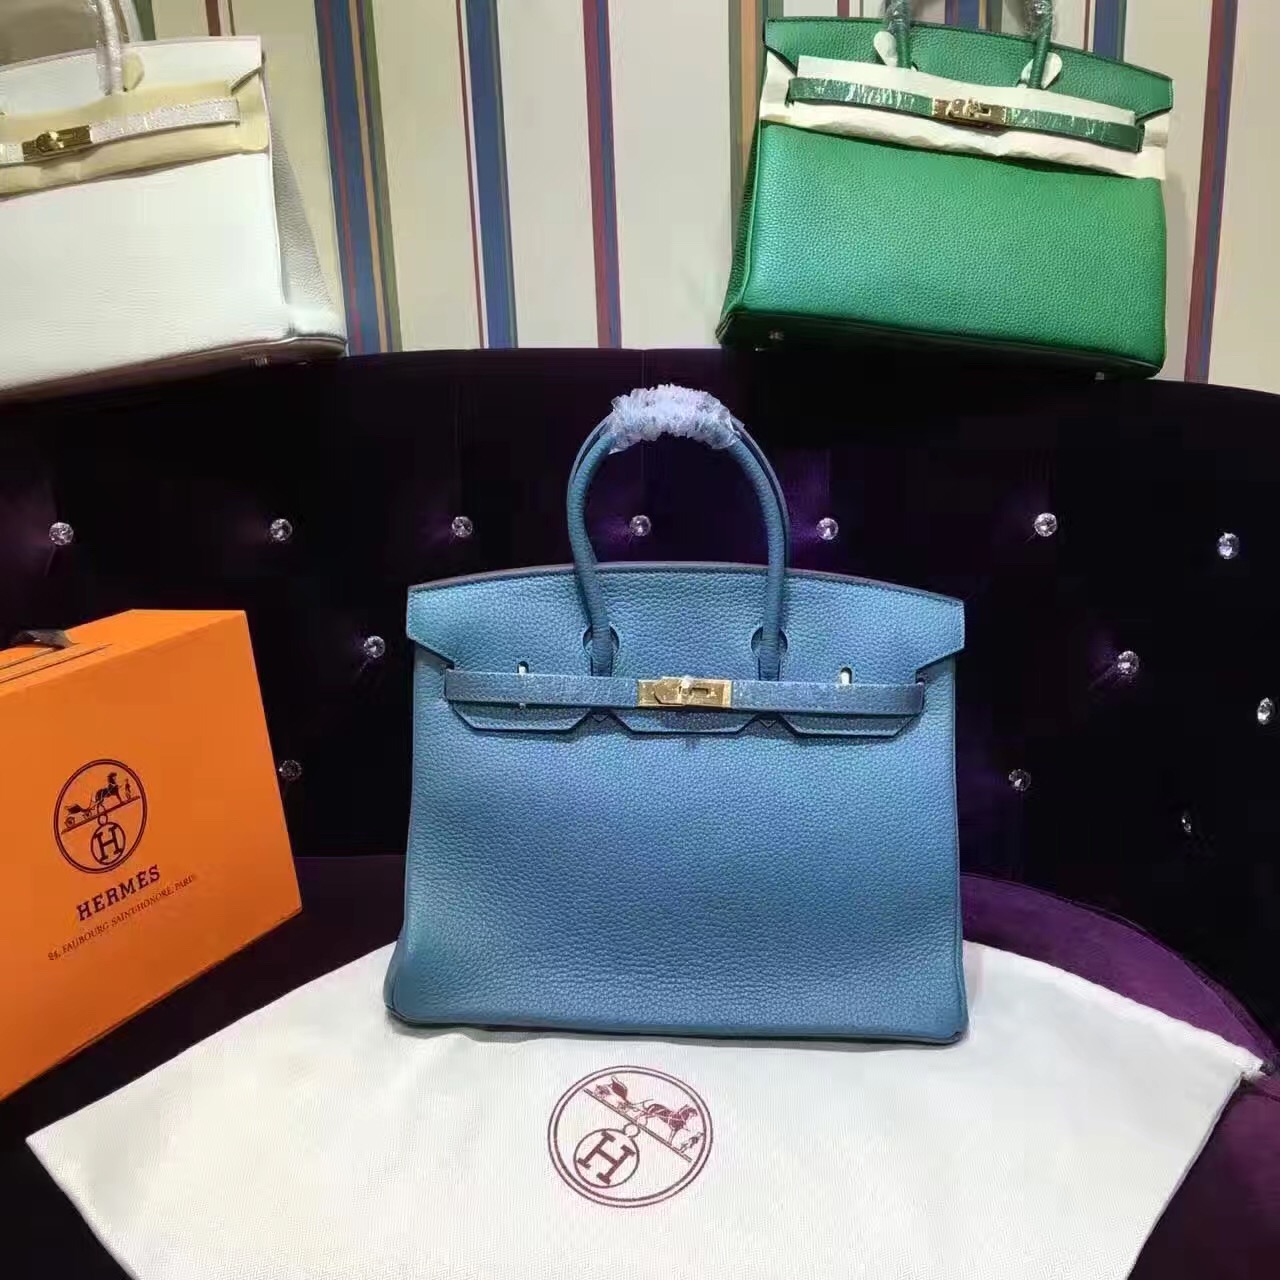 Hermes light blue Birkin handbags